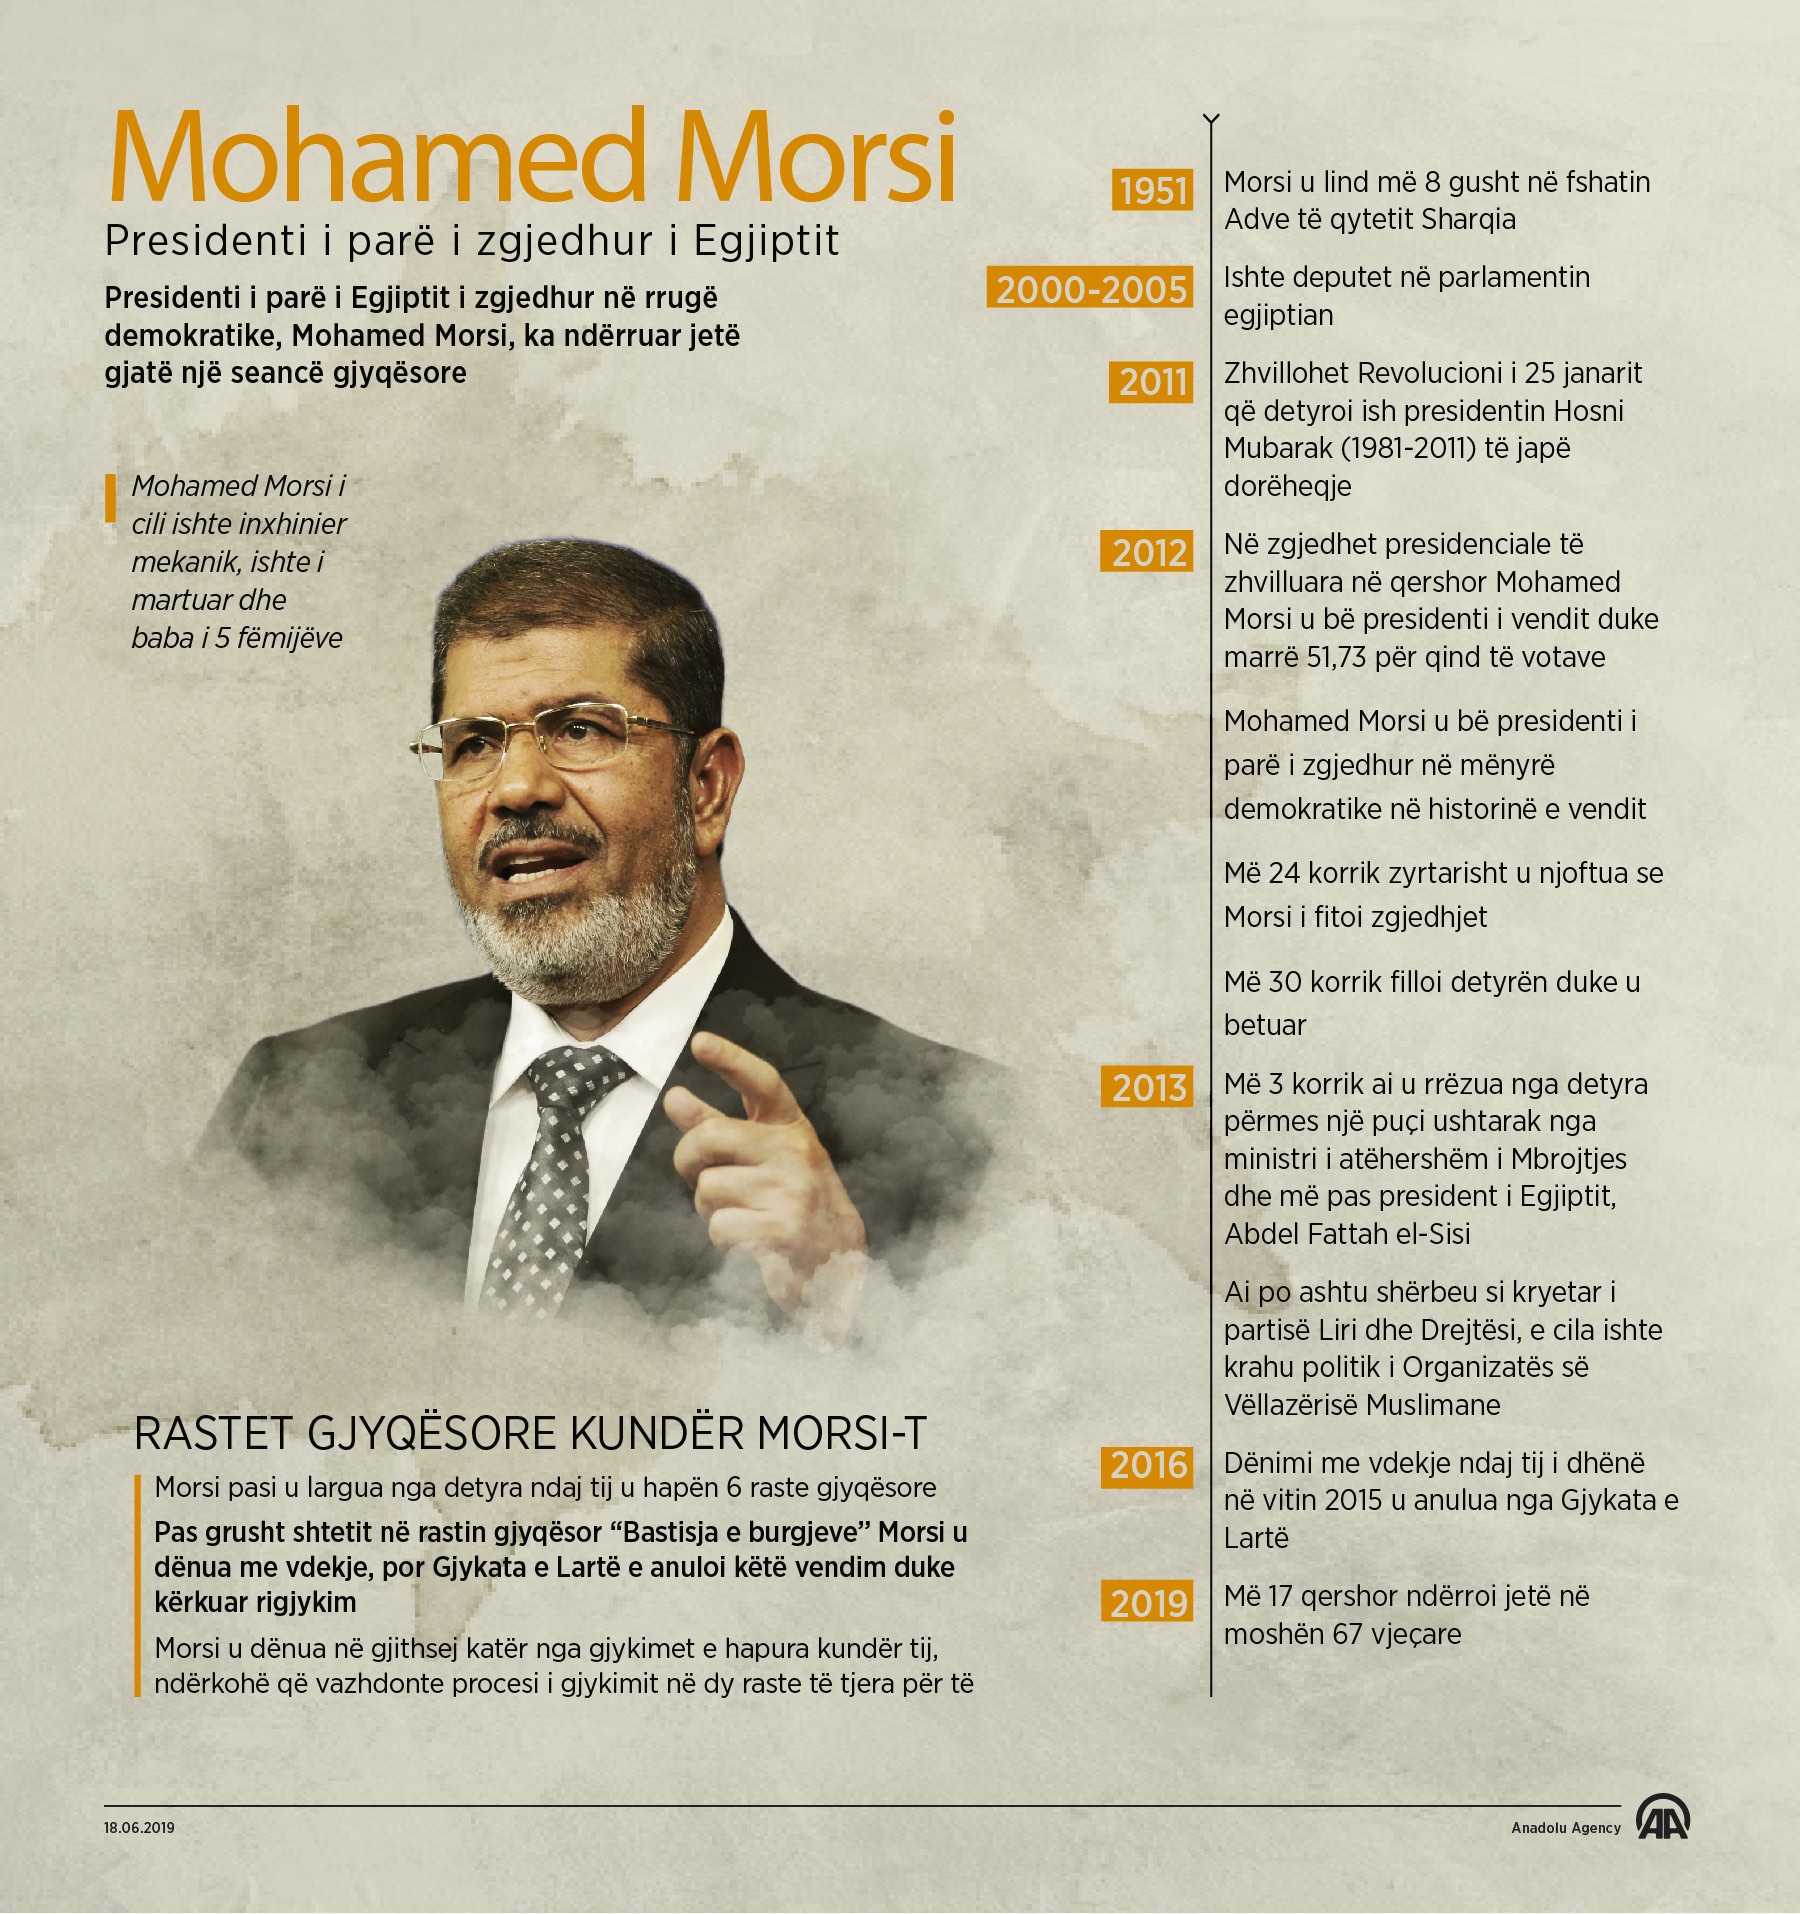 Mohamed Morsi, presidenti i parë i zgjedhur i Egjiptit